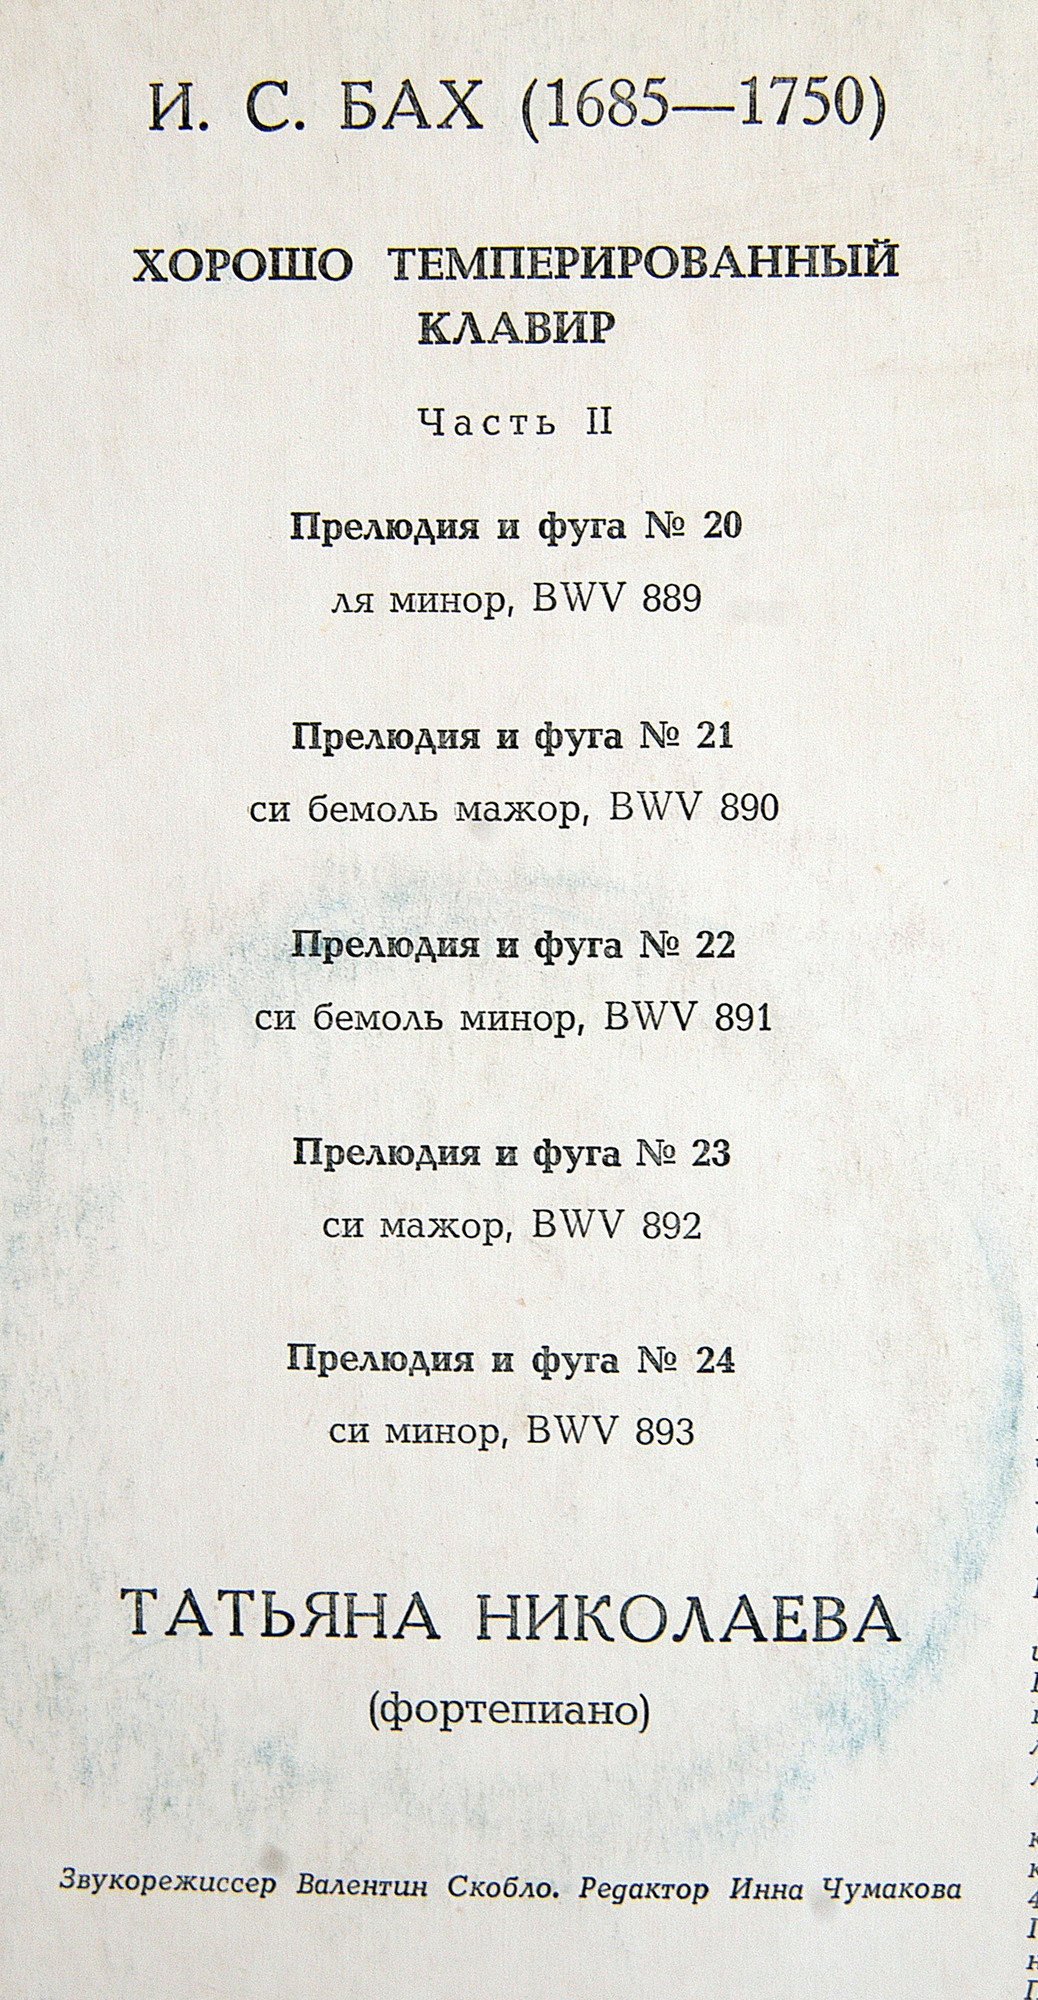 И. С. БАХ "Хорошо темперированный клавир", часть II, №№ 20-24 (Т. Николаева, ф-но)